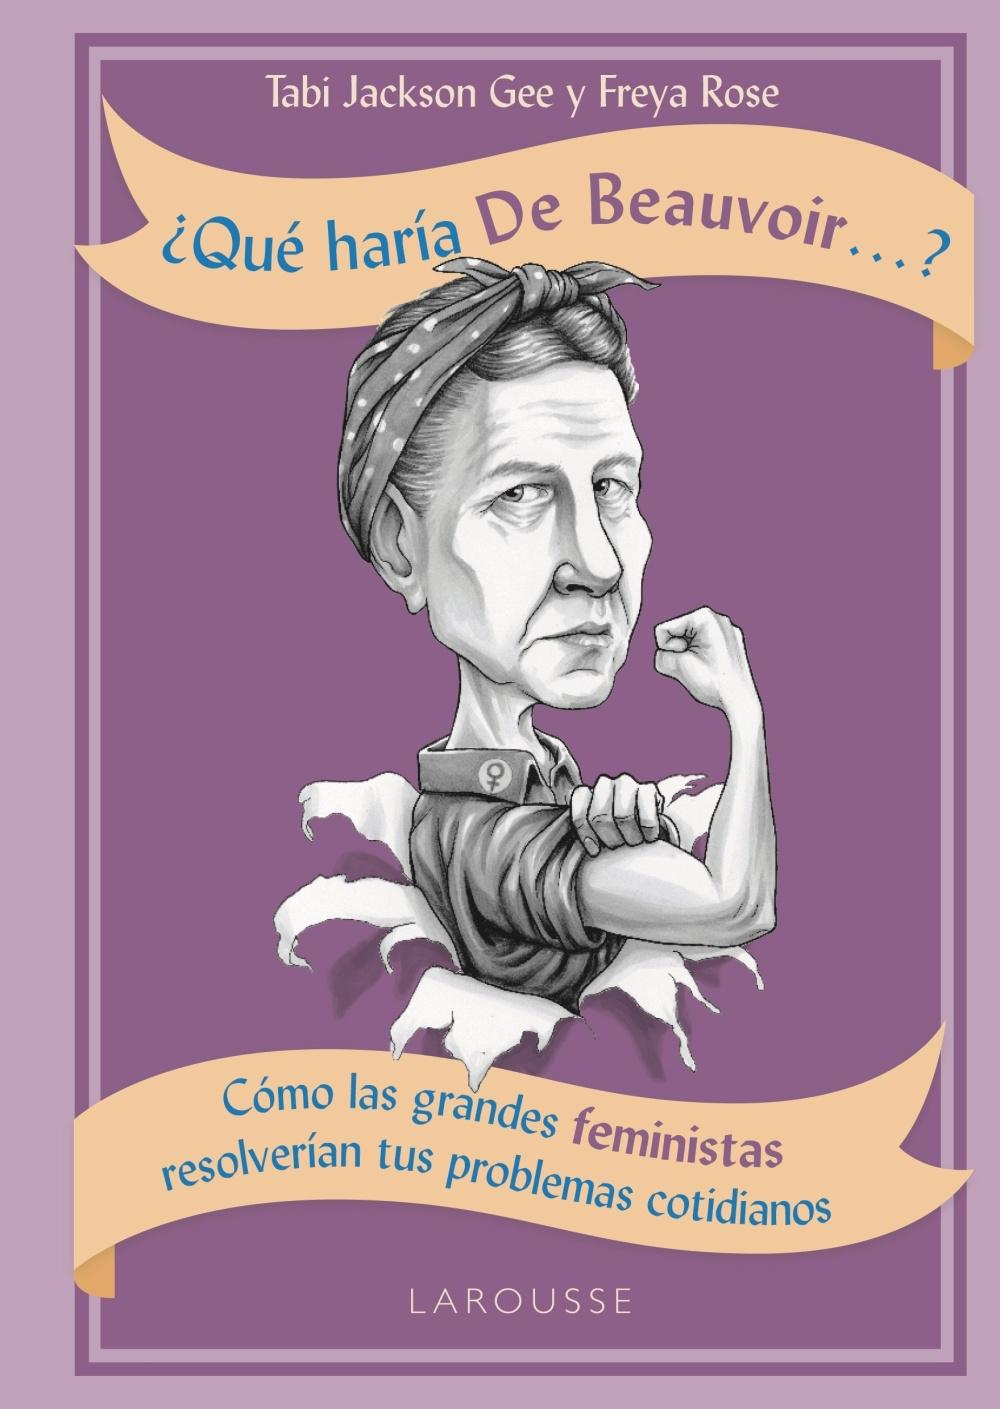 ¿Qué haría de Beauvoir...? "Cómo las grandes feministas resolverían tus problemas cotidianos". 